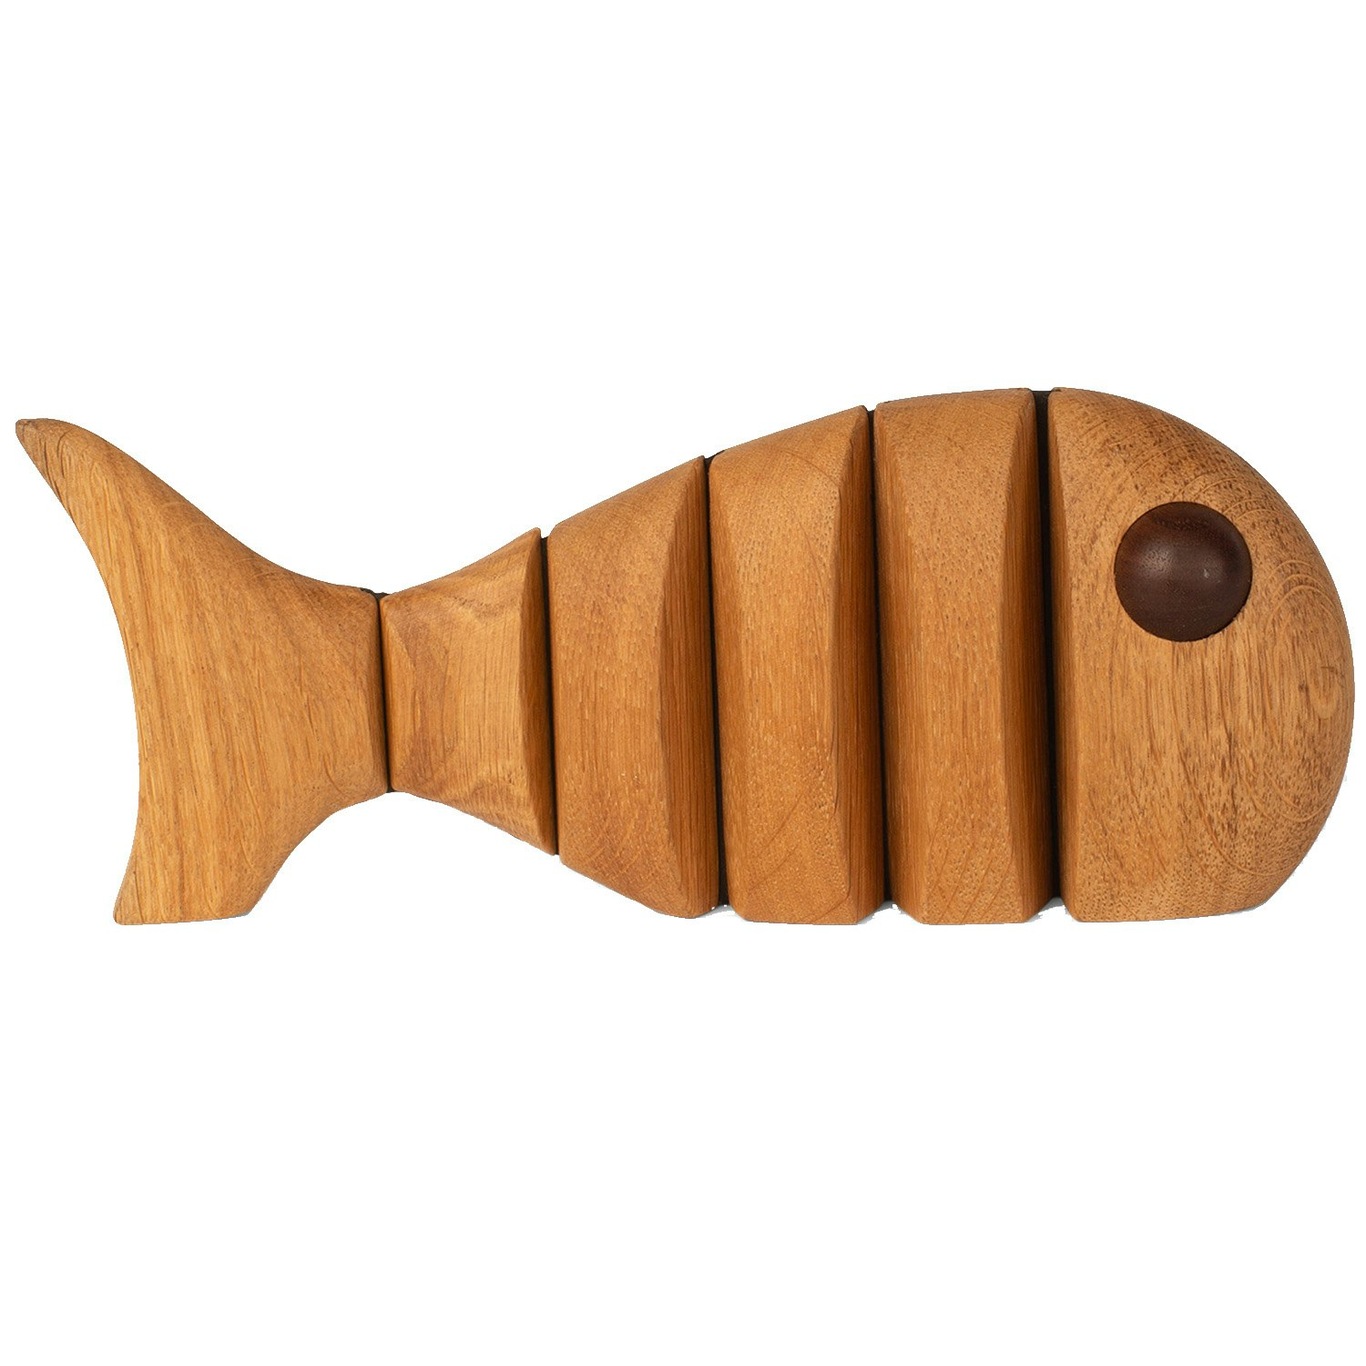 The Wood Fish Houten Beeldje 22 cm